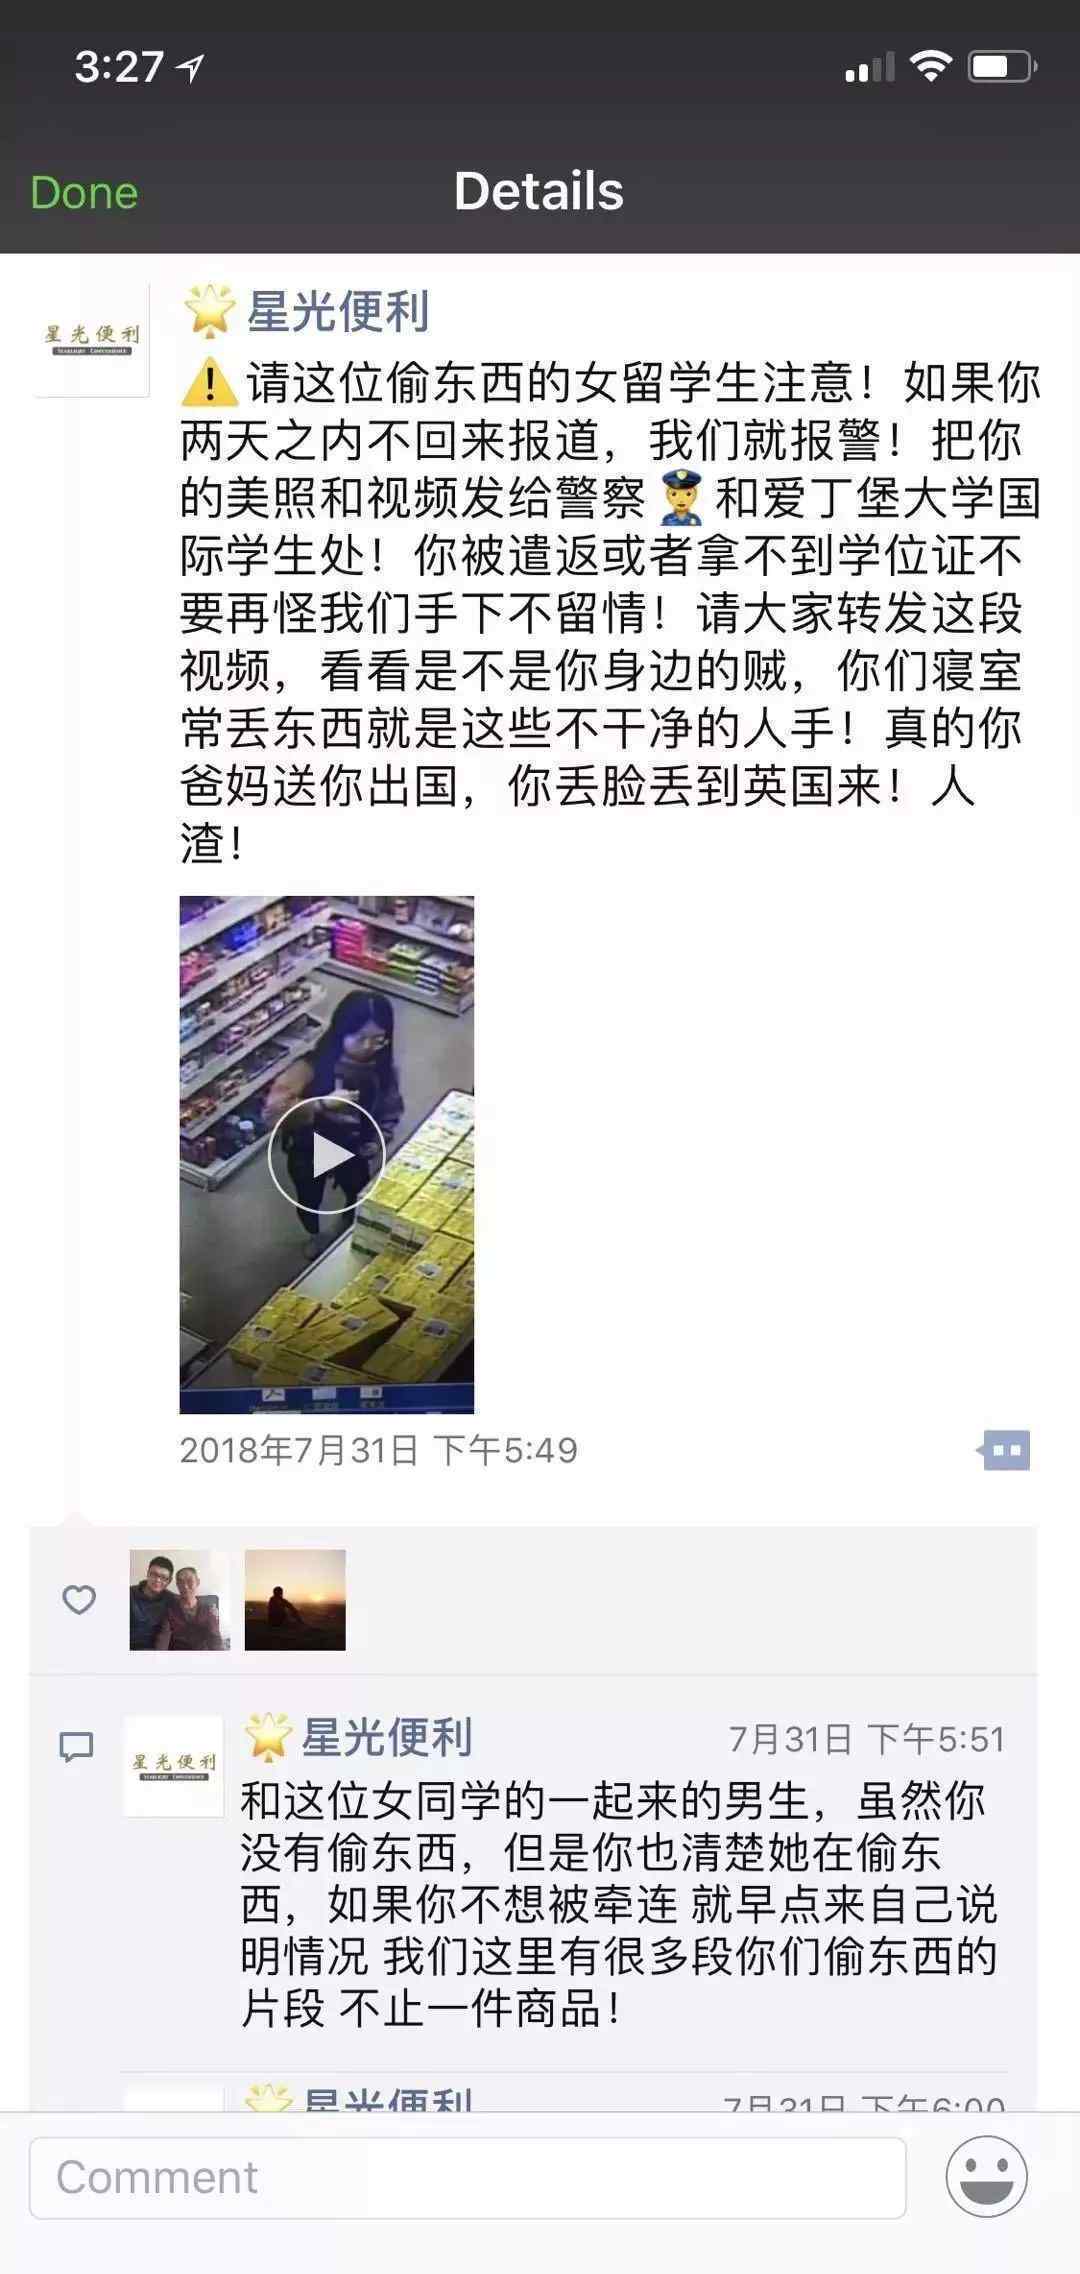 北大女生华人超市偷窃被抓 称就是想偷